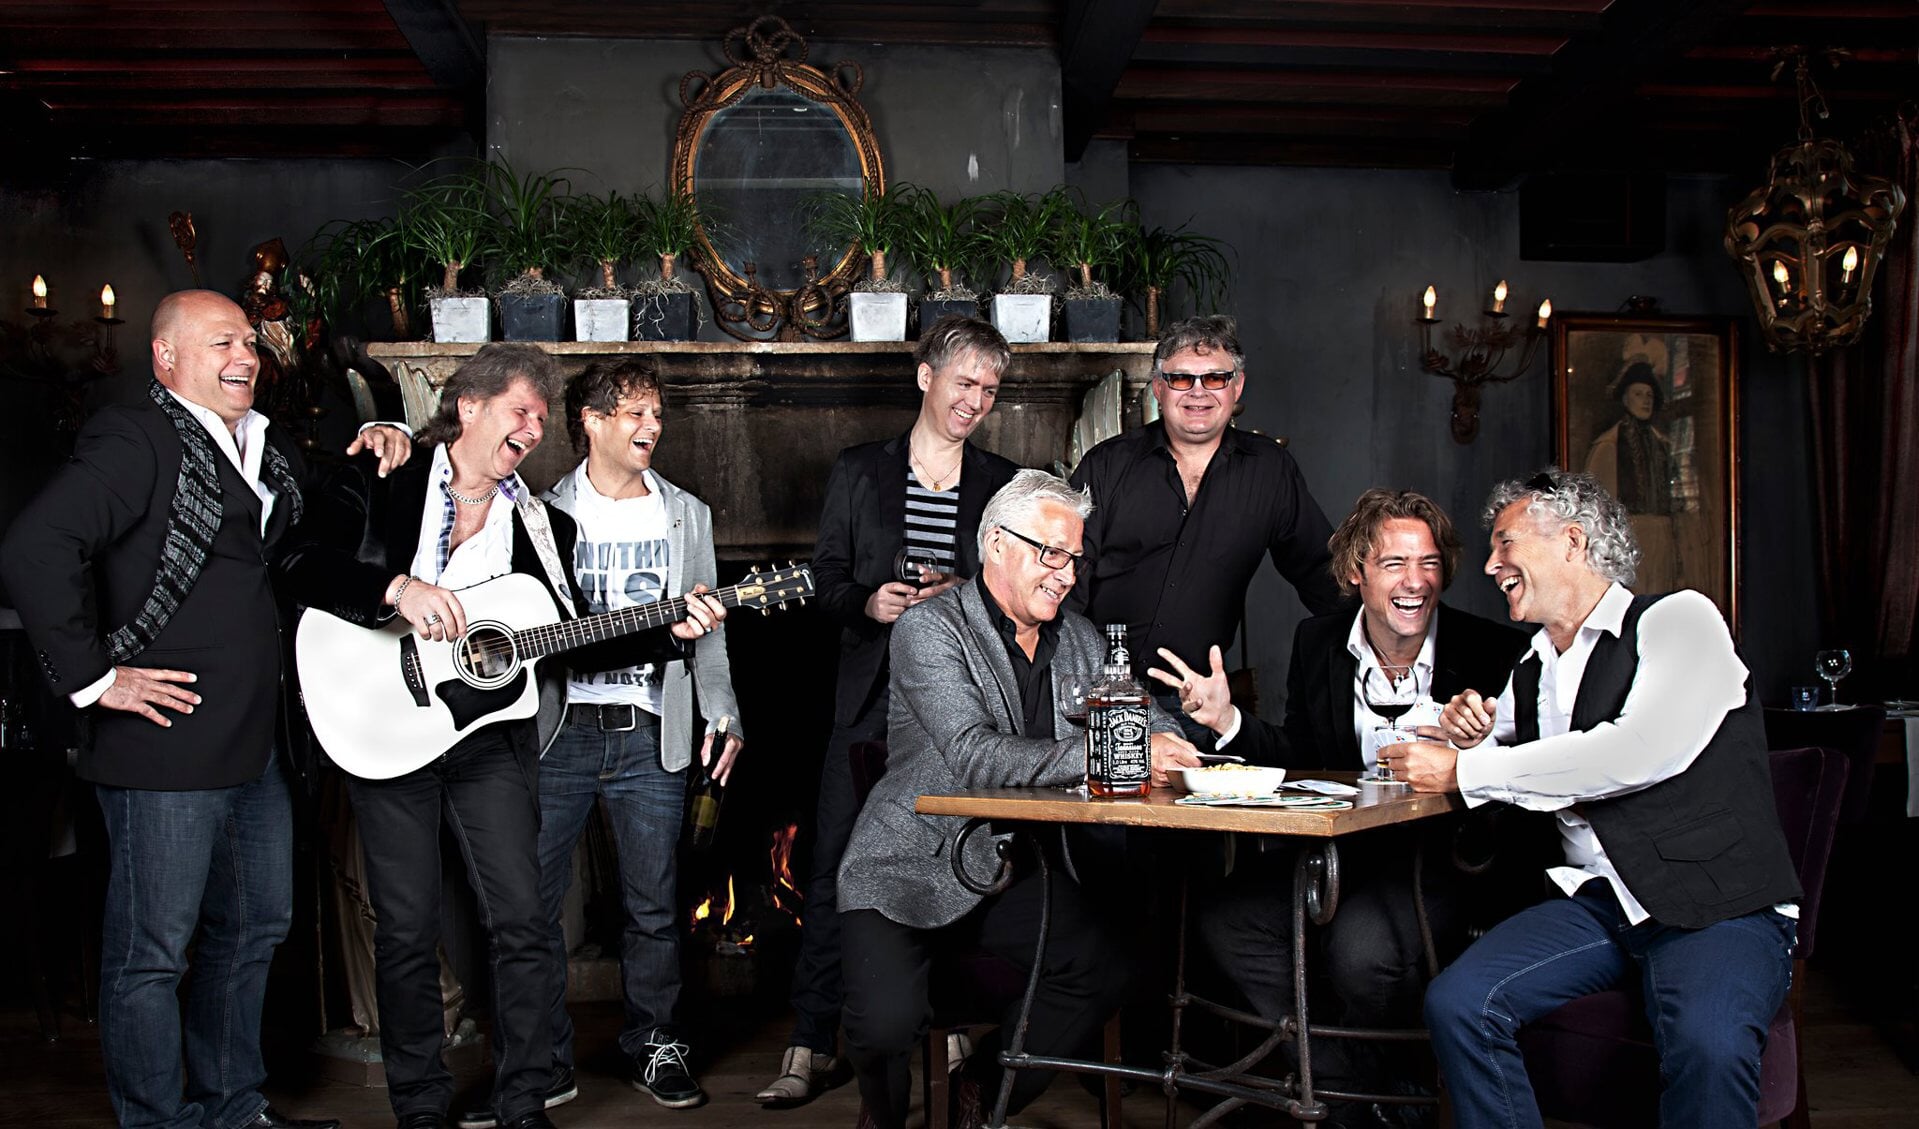 Tribute to the Cats band. Links aan tafel de recent overleden Piet Schilder. Zijn plaats wordt overgenomen door Kees Kos